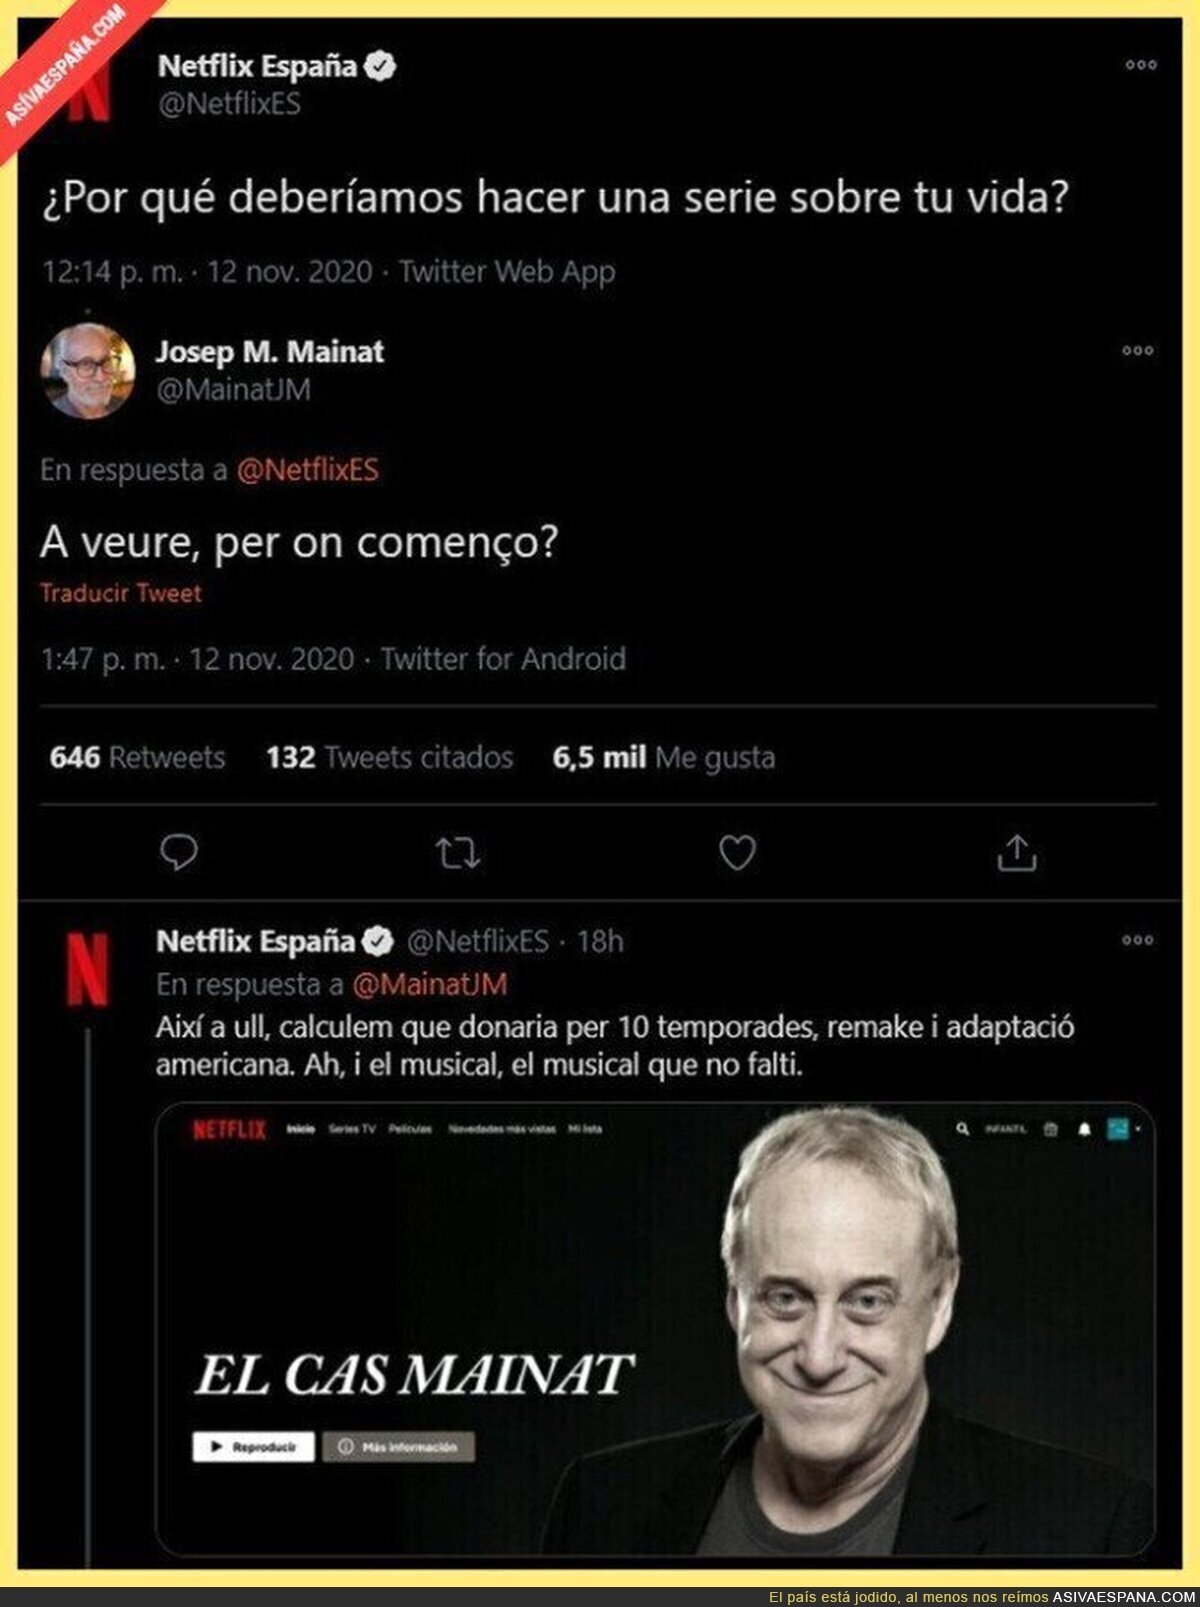 Netflix pregunta en Twitter pregunta por qué debería hacer una serie sobre tu vida y responde Josep M. Mainat con una gran respuesta